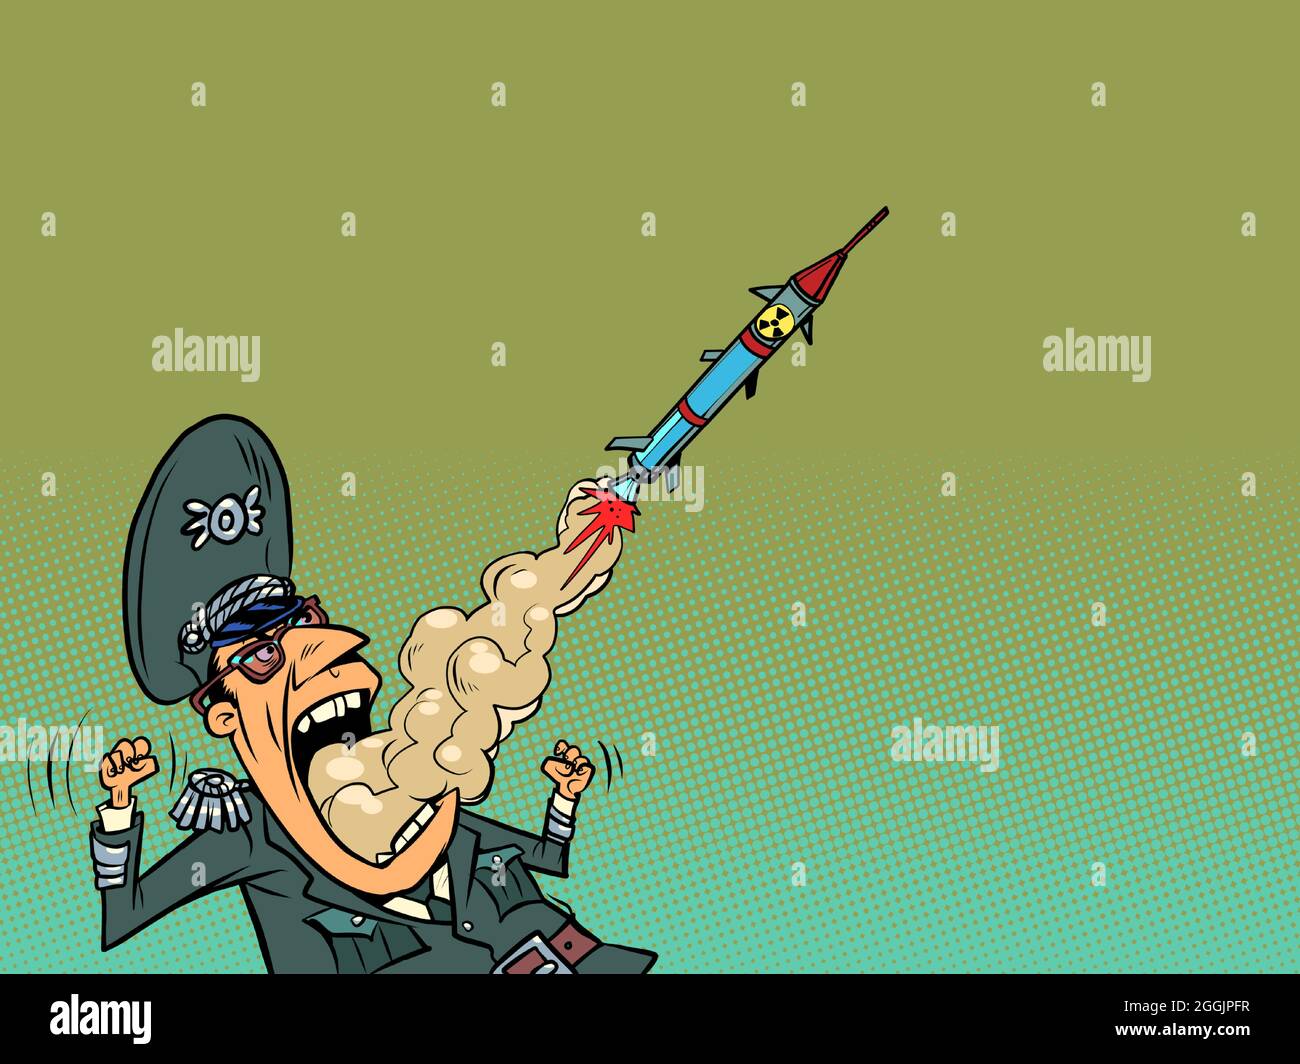 Un général militaire libère des missiles et déclenche une guerre. Discours agressif et politique Illustration de Vecteur